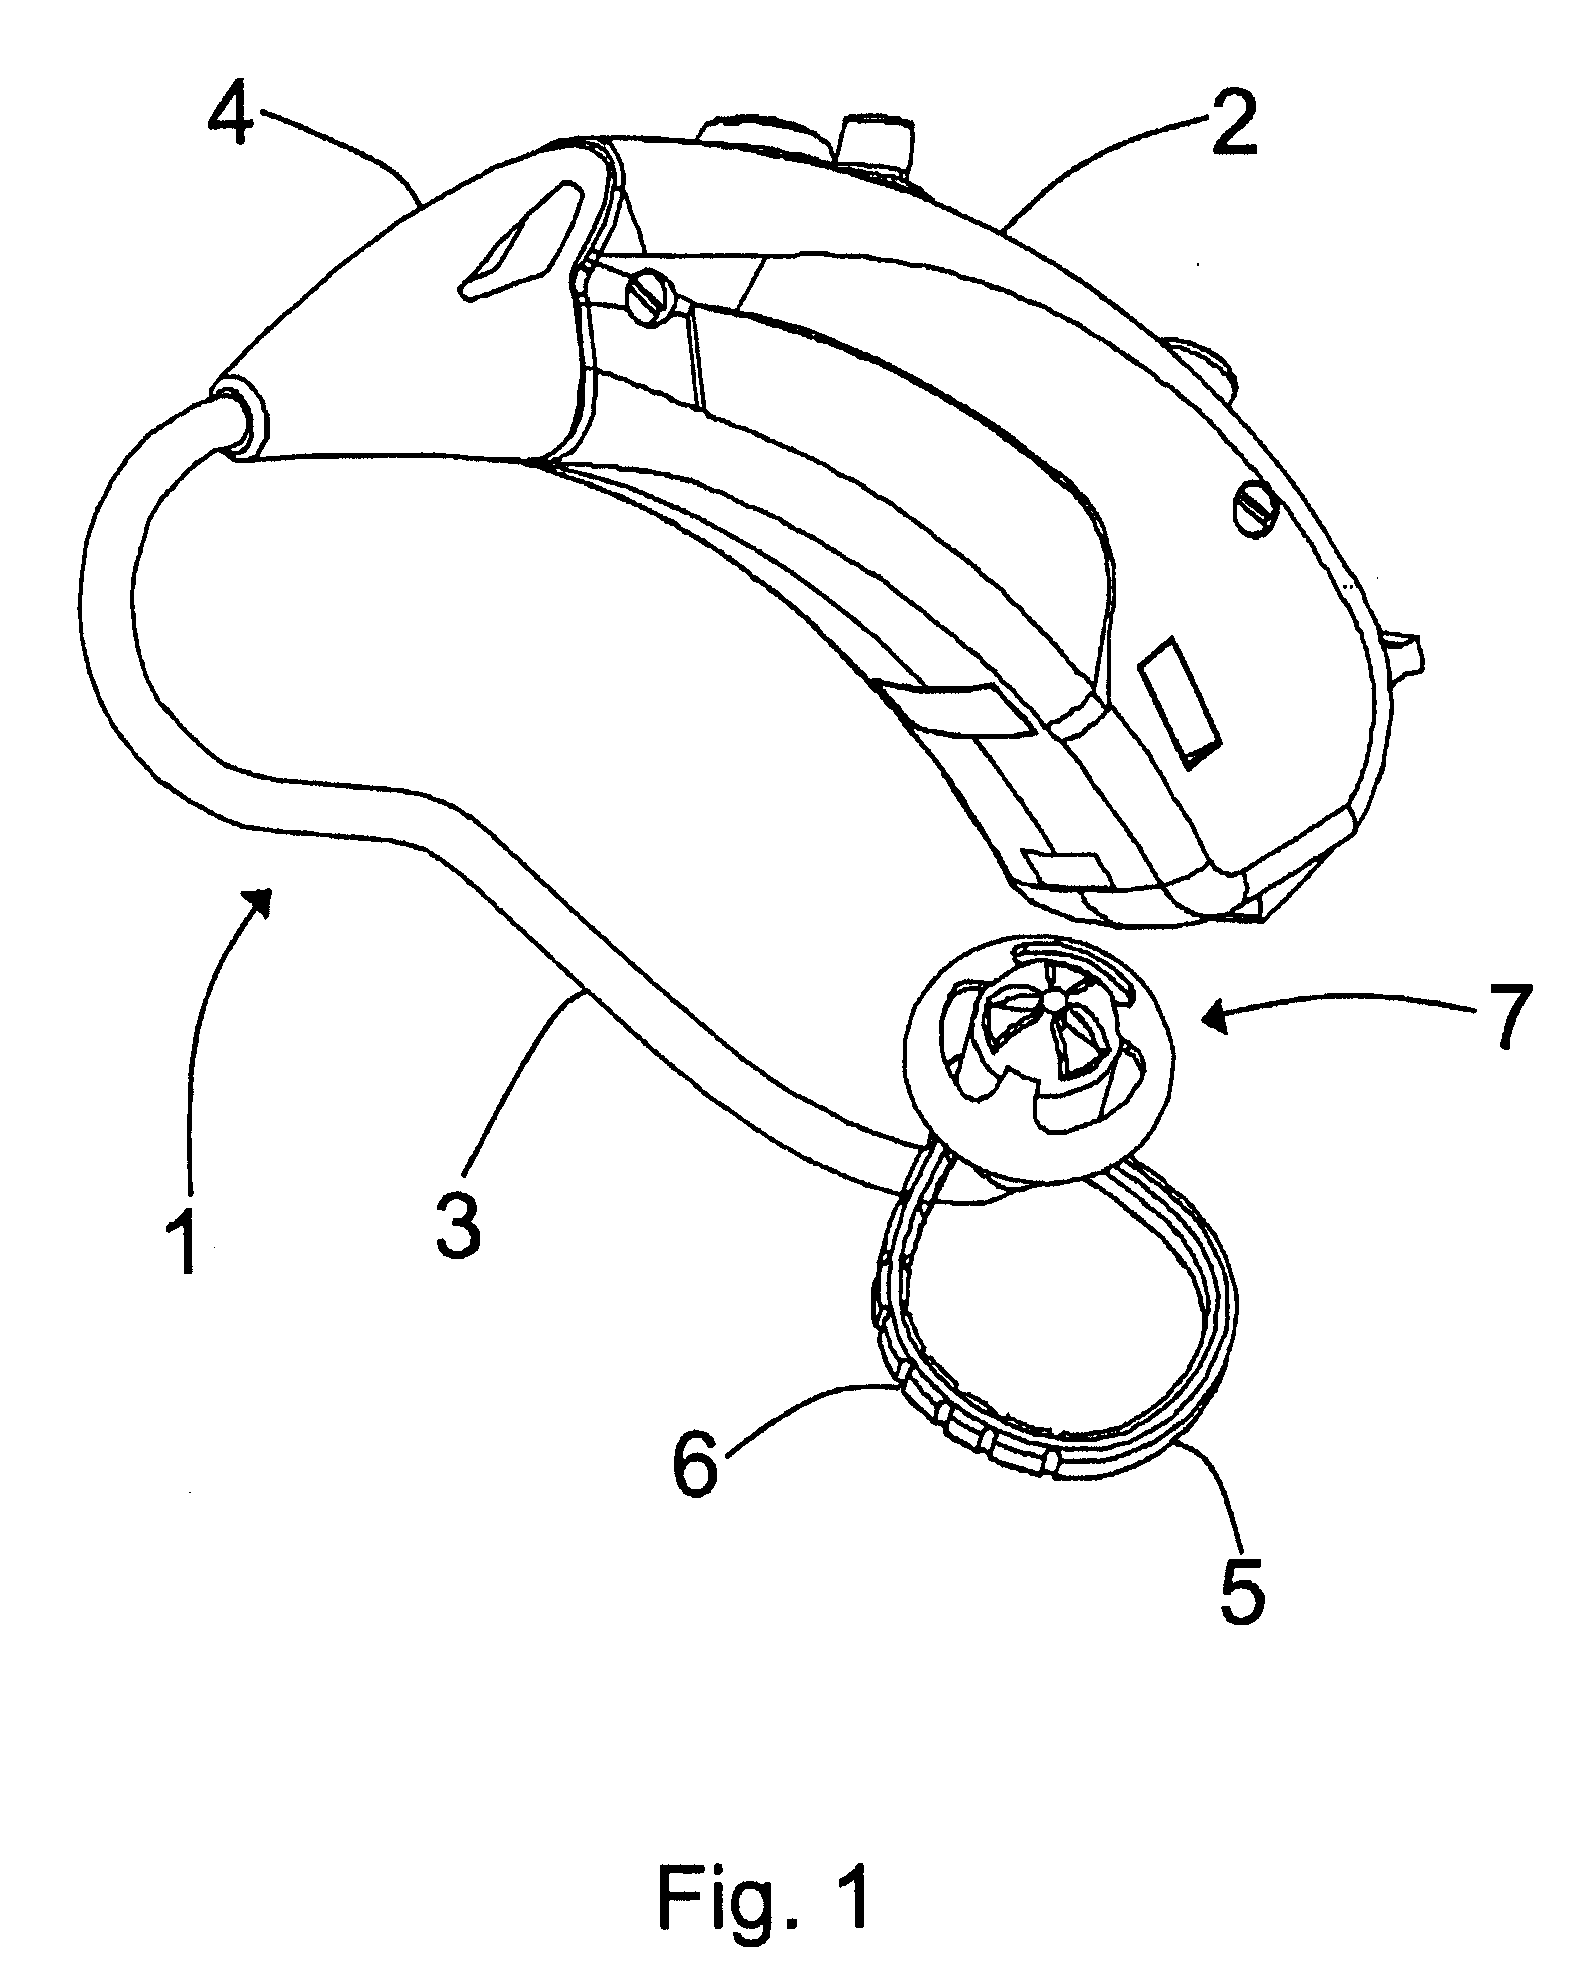 Earplug for a hearing aid